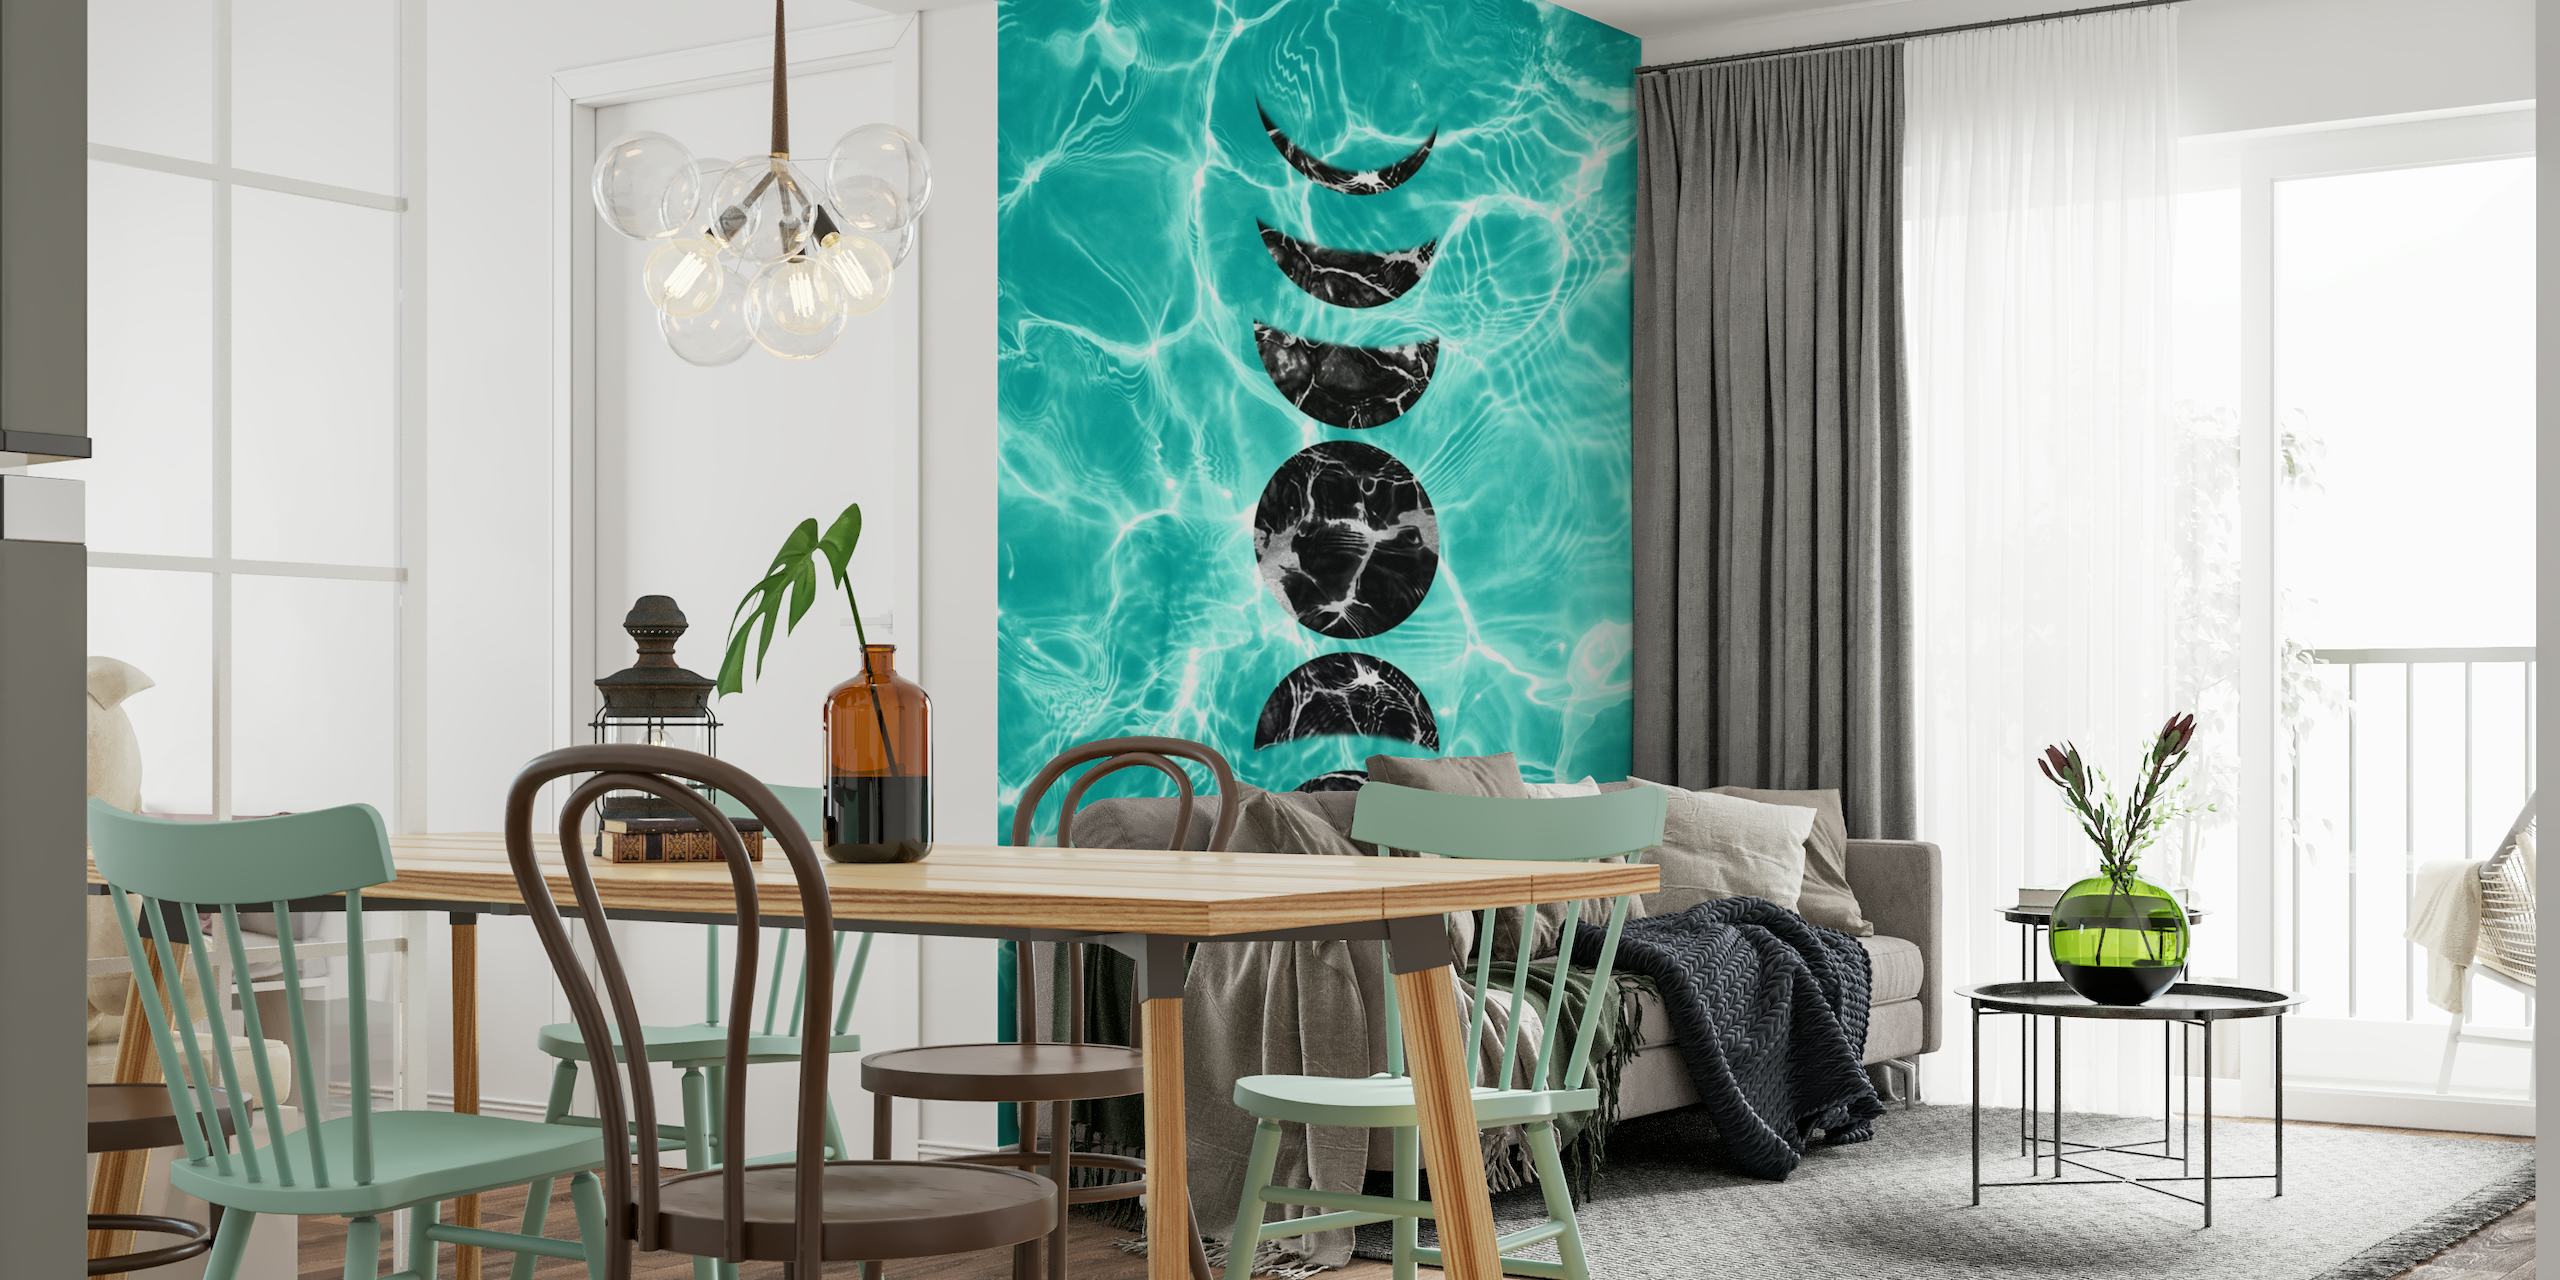 Pool Dream Moon Phases 2b wallpaper